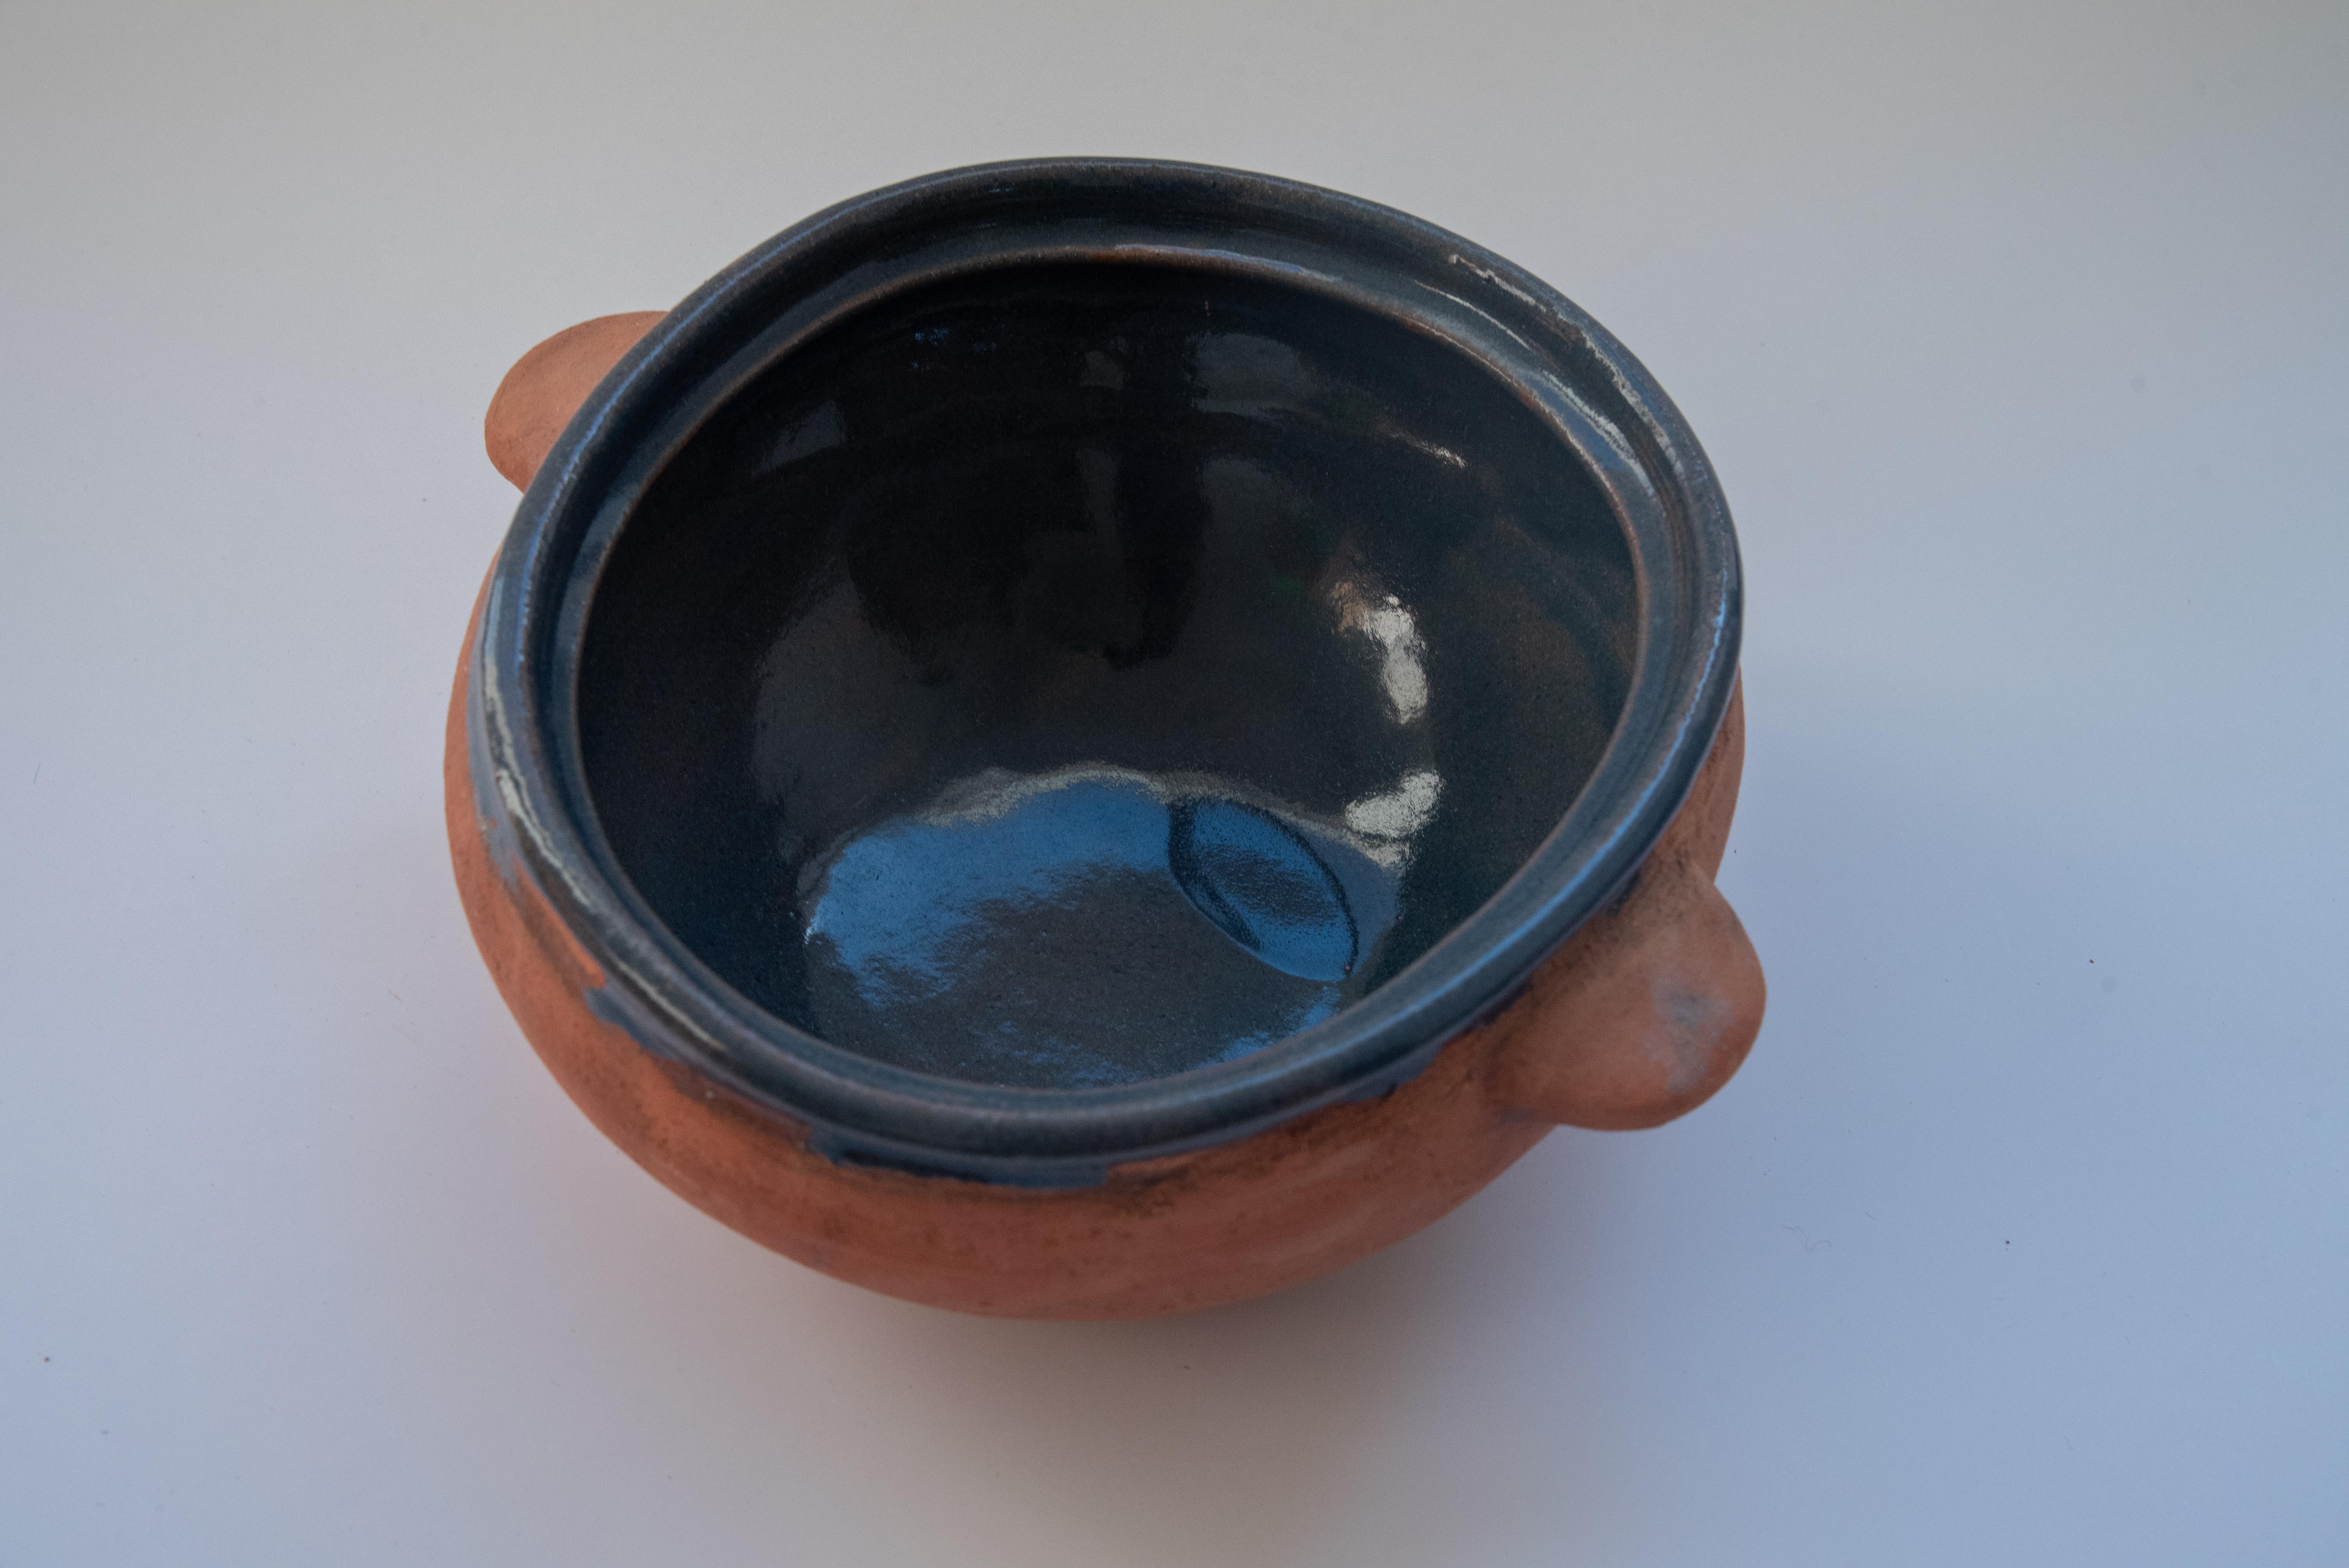 Cette magnifique coupe à fruits utilitaire en céramique est recouverte en surface d'un pigment bleu sans plomb. Fabriqué à Oaxaca, au Mexique, par l'artiste Rolando Regino, Porras, fils de la célèbre artiste folklorique Dolores Porras. Ce design